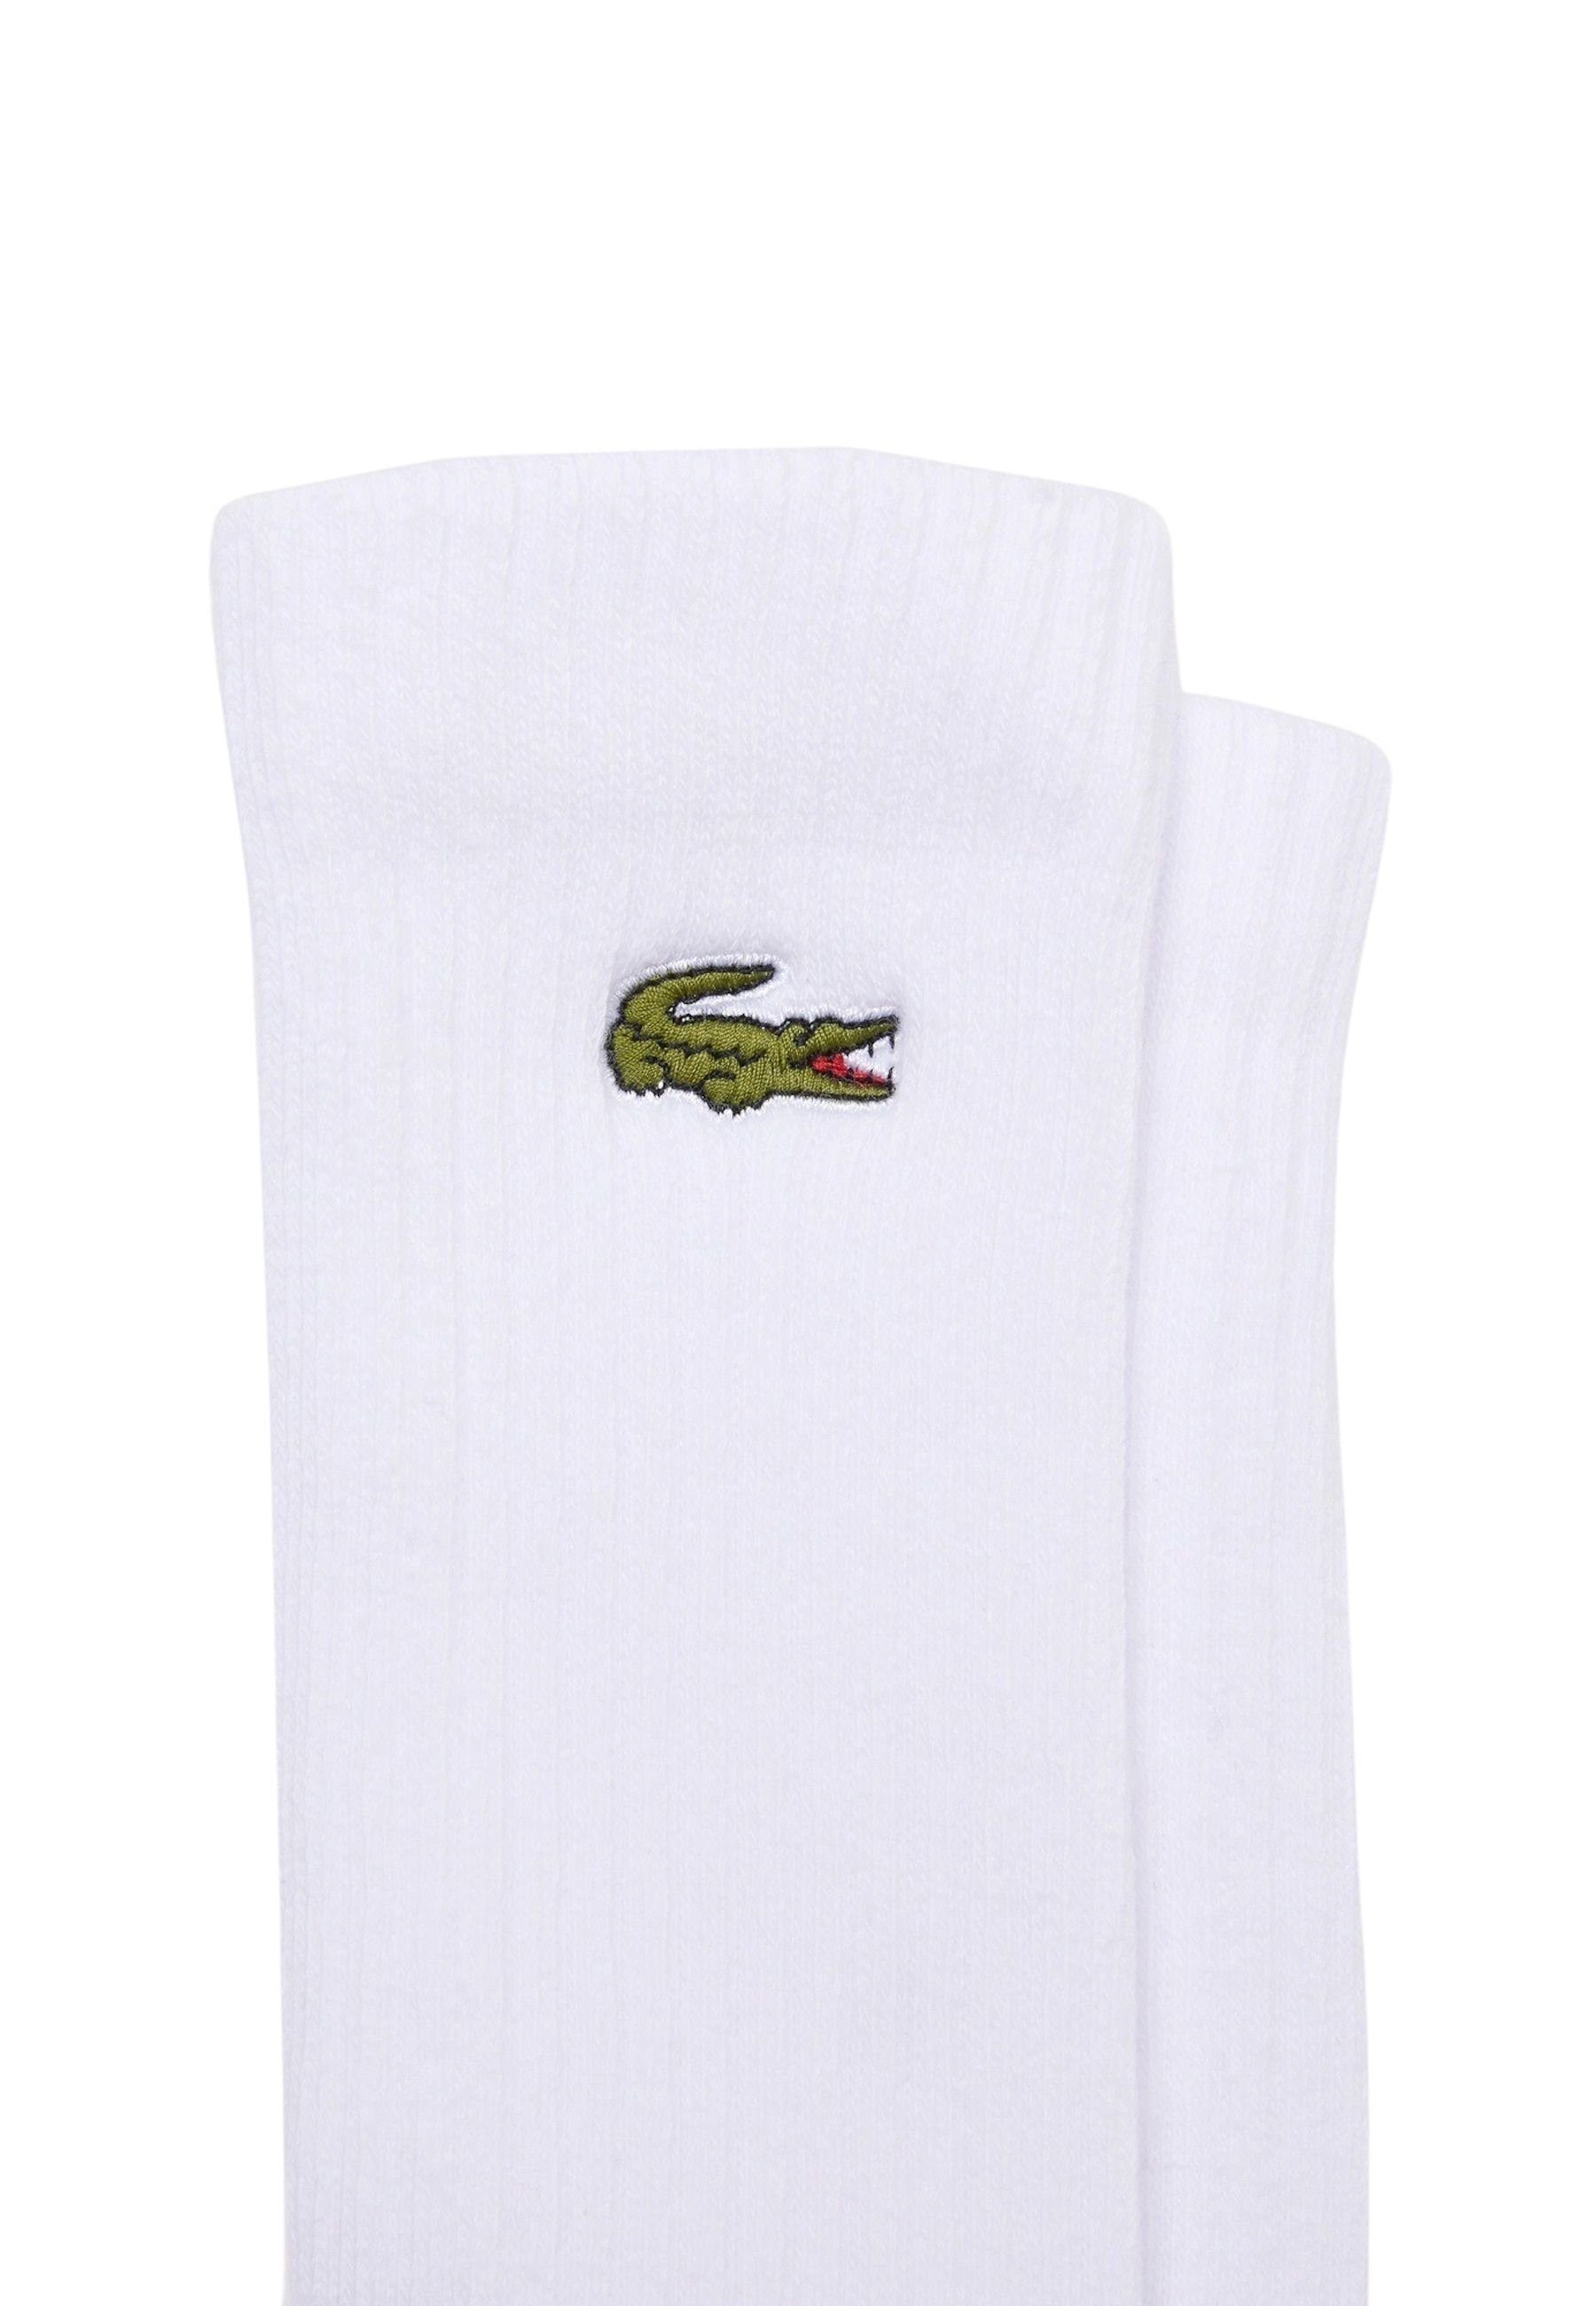 Lacoste Socken Socken Permanent Offer Dreierpack (3-Paar) Socken hohe weiß